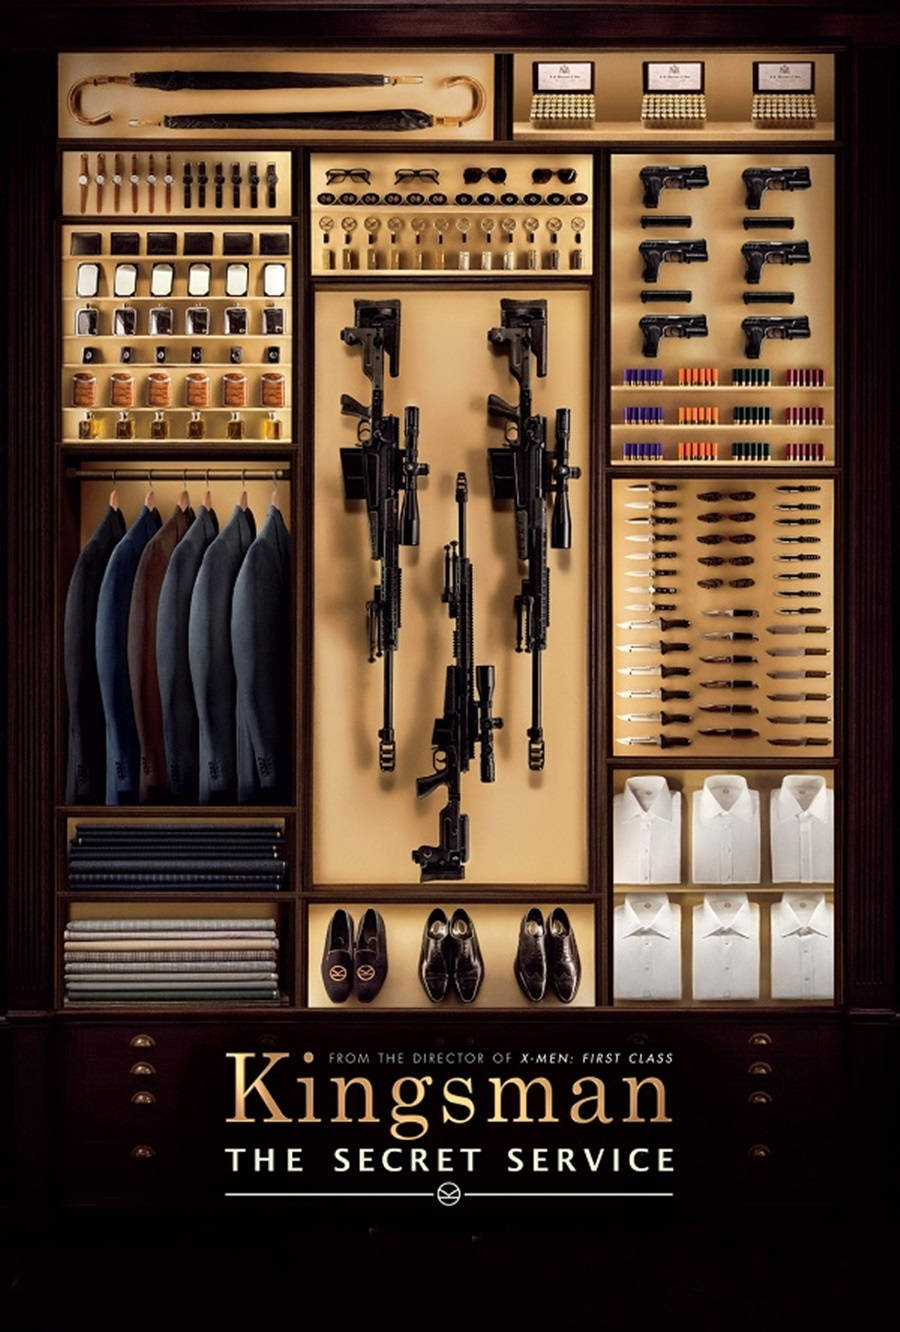 Posterdo Armário Dos Kingsman: Serviço Secreto. Papel de Parede